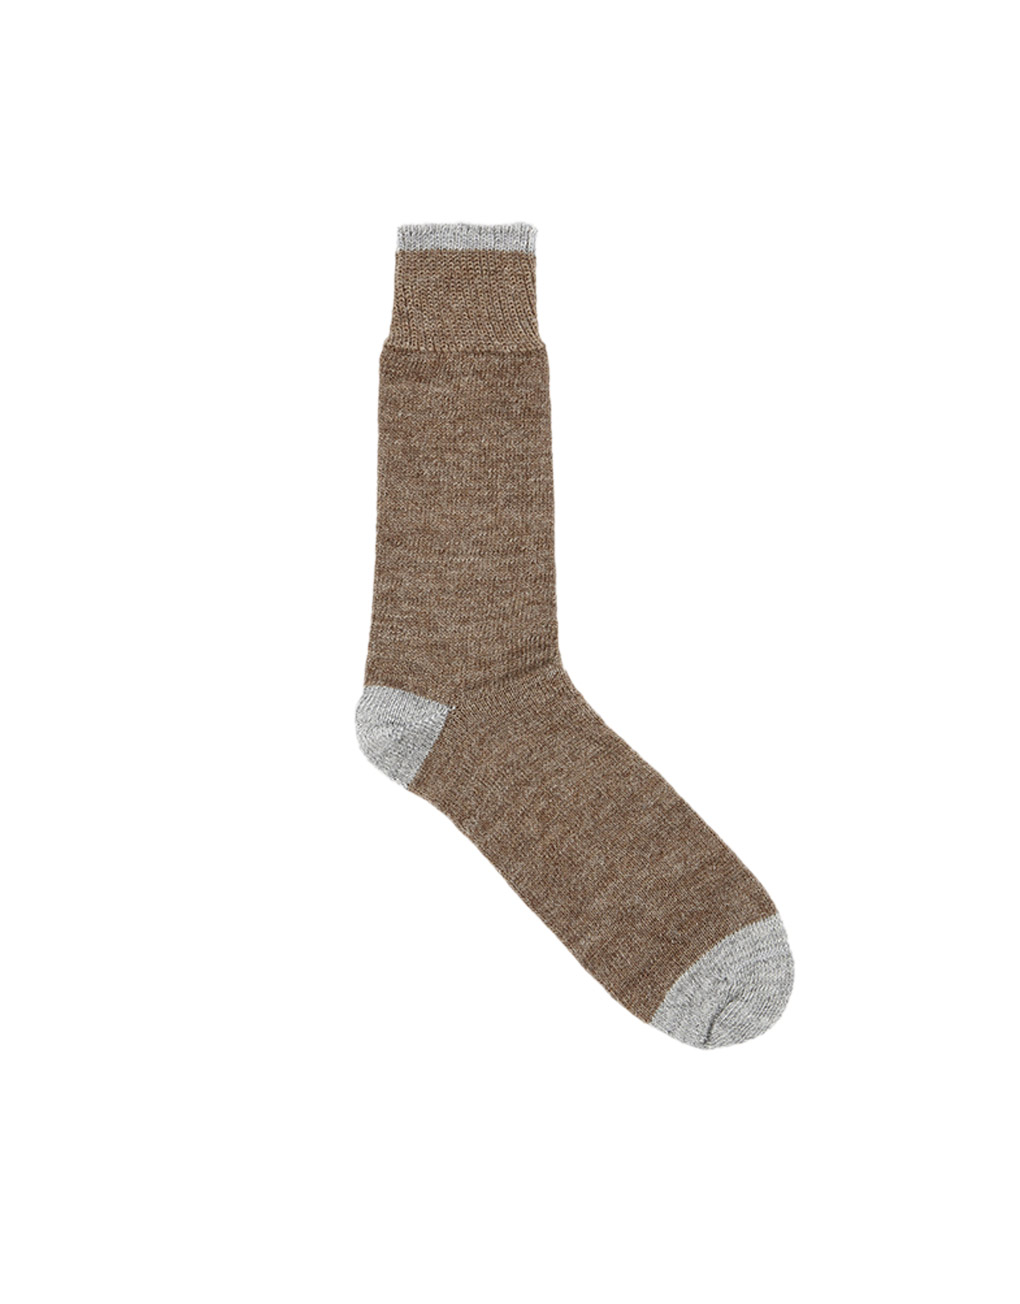 Universal Works – Socks alpaca wool brown